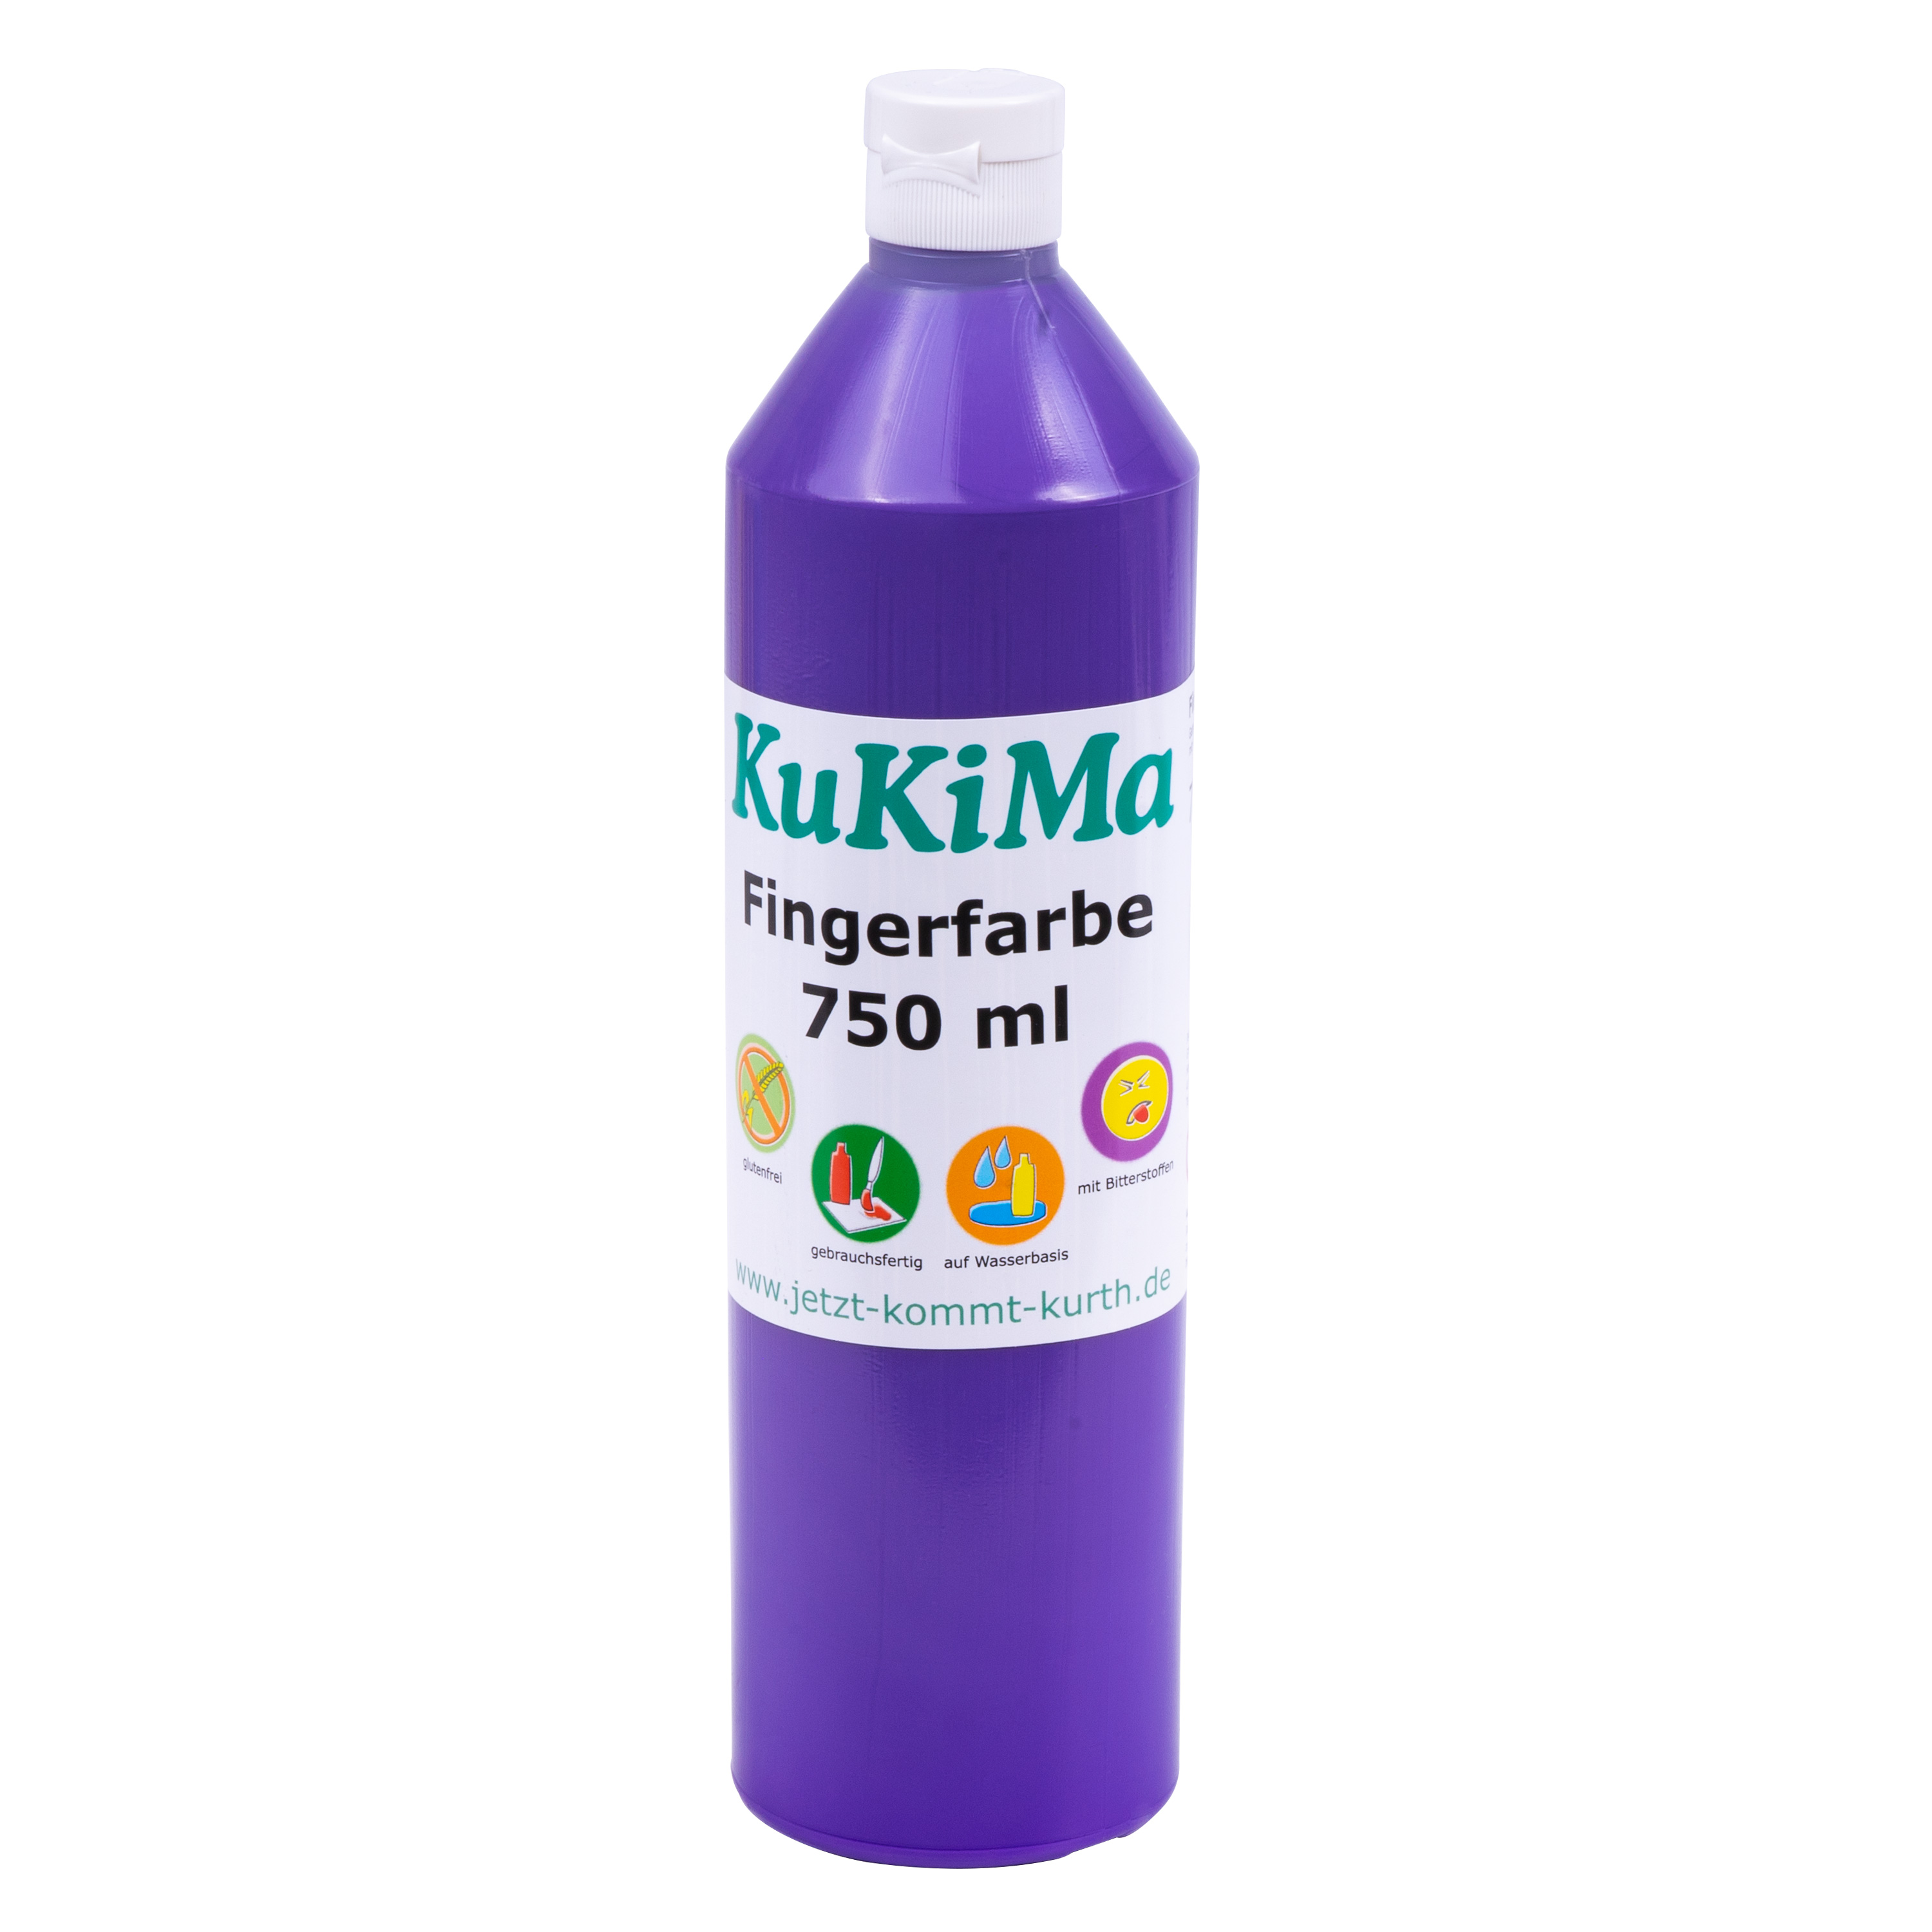 KuKiMa Fingerfarbe 750 ml, violett